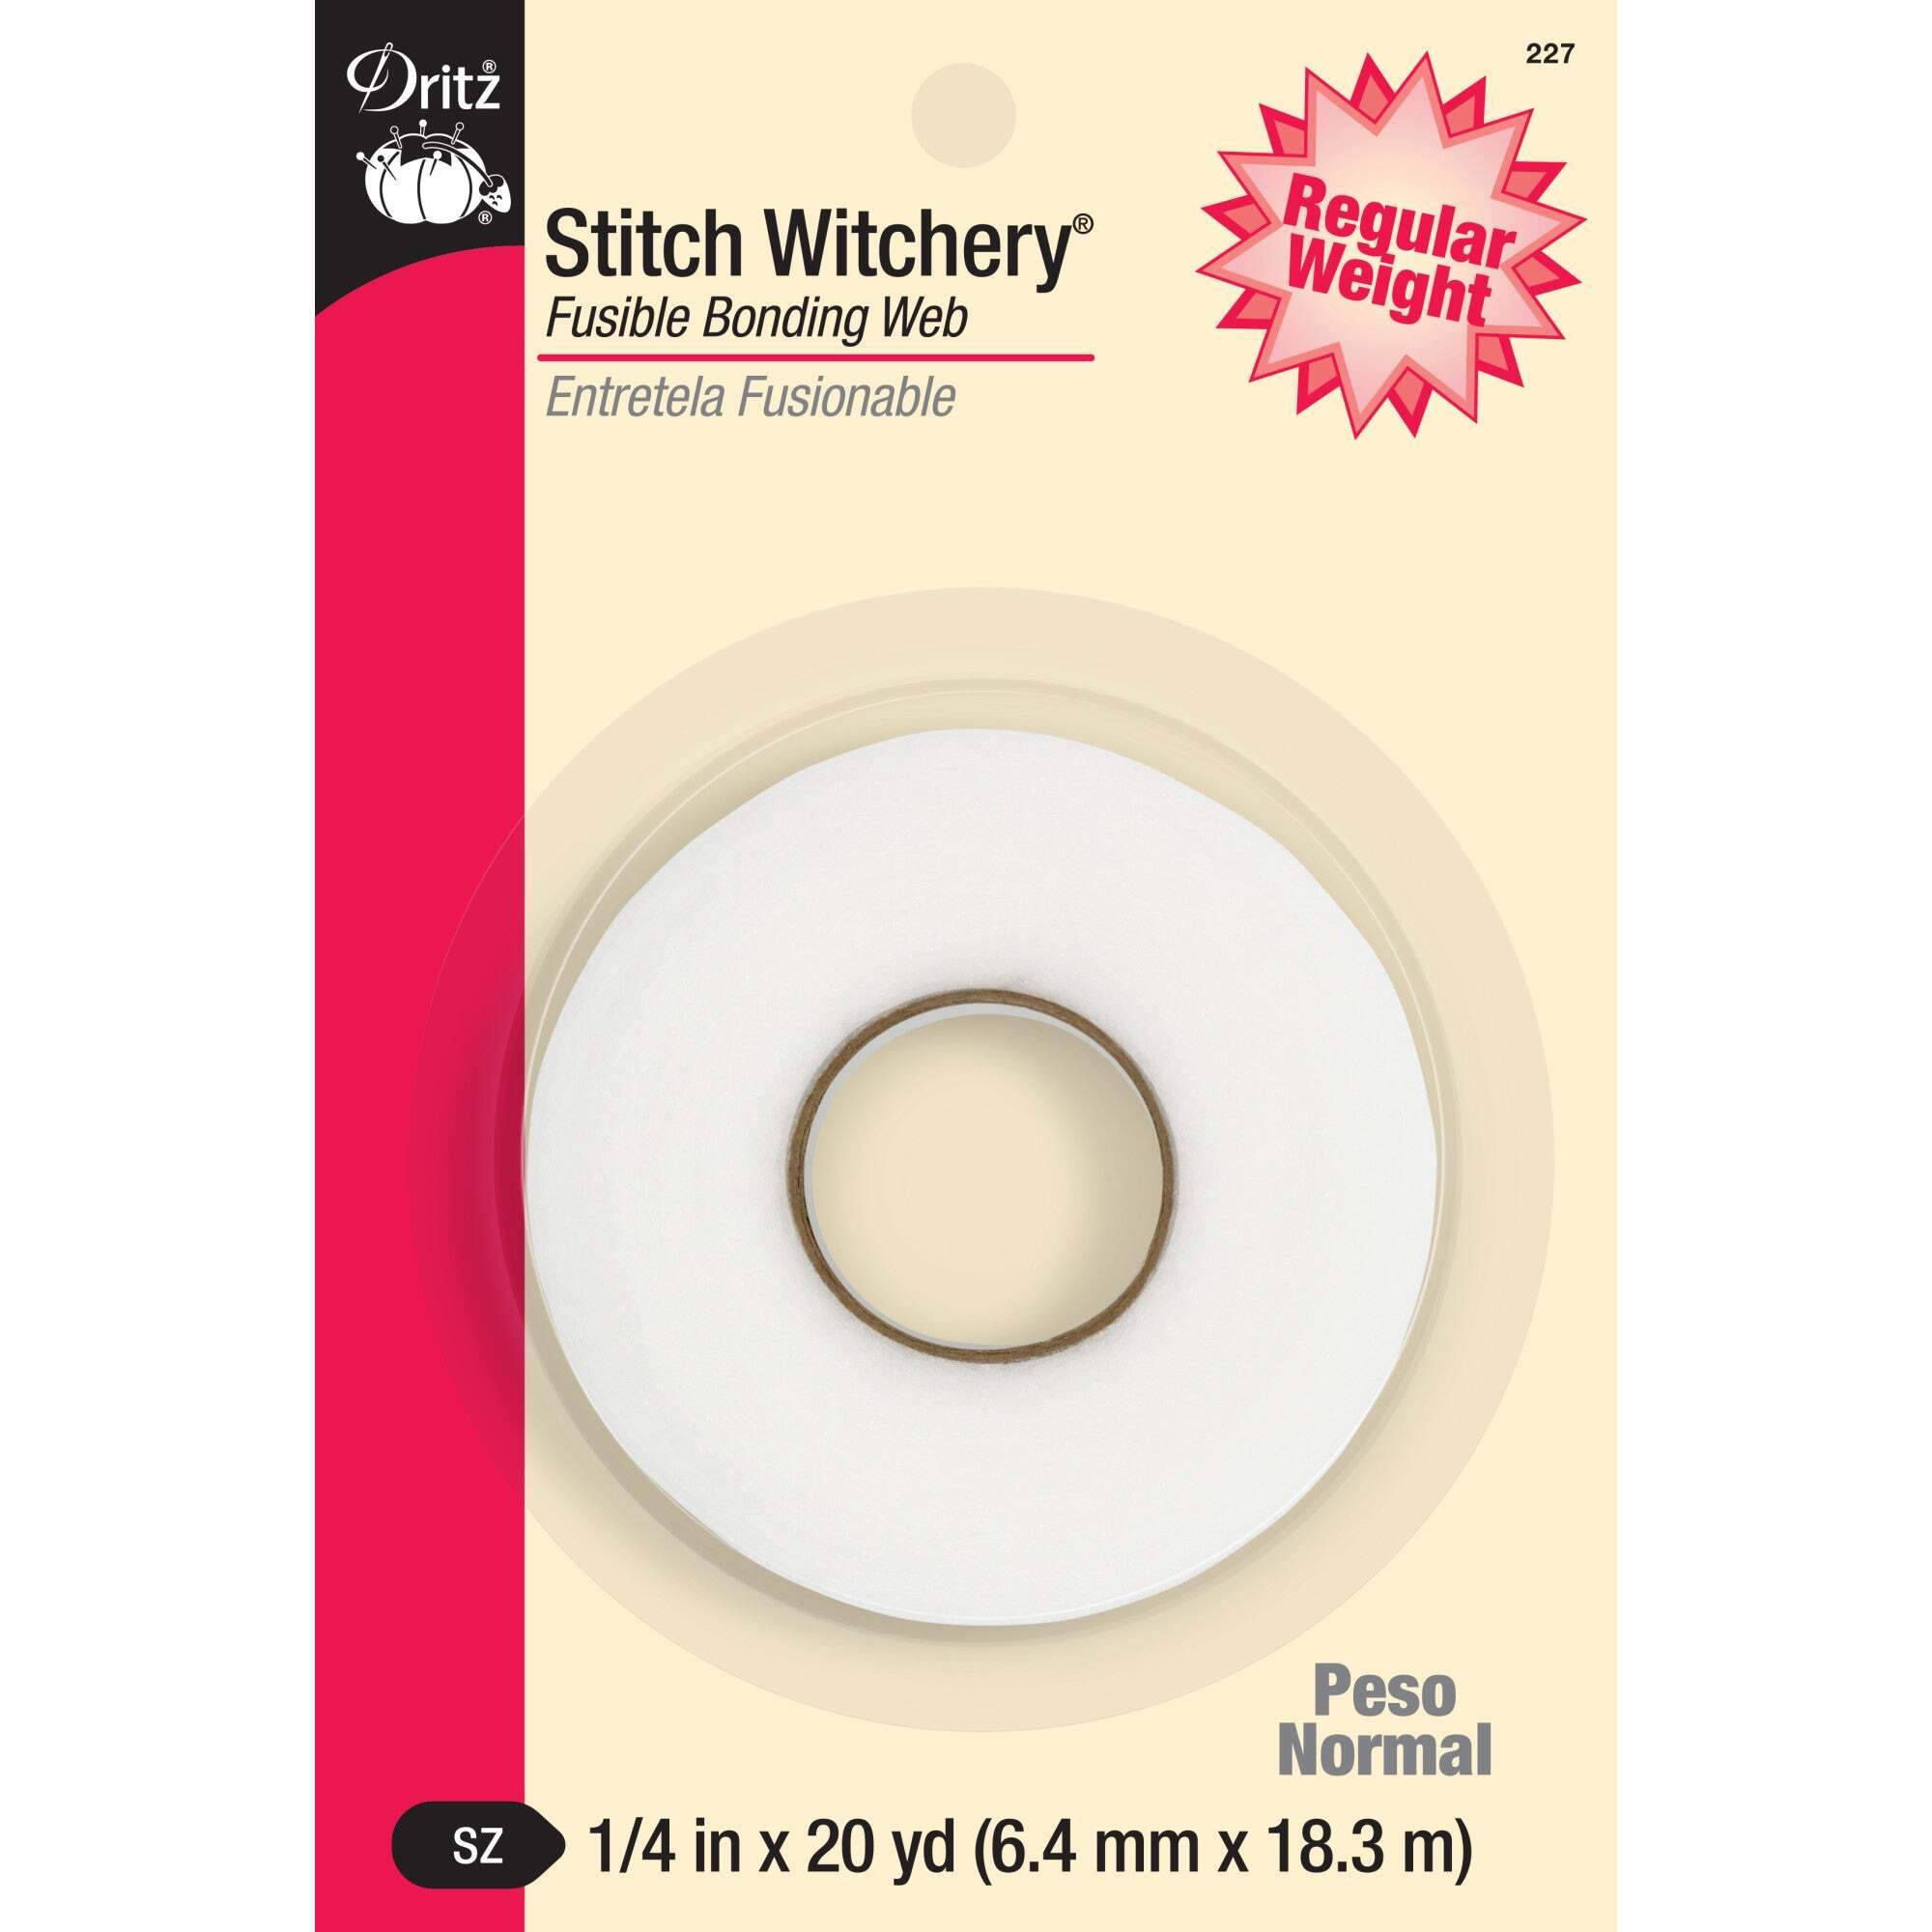 Stitch Witchery 1/4" x 20yds. White